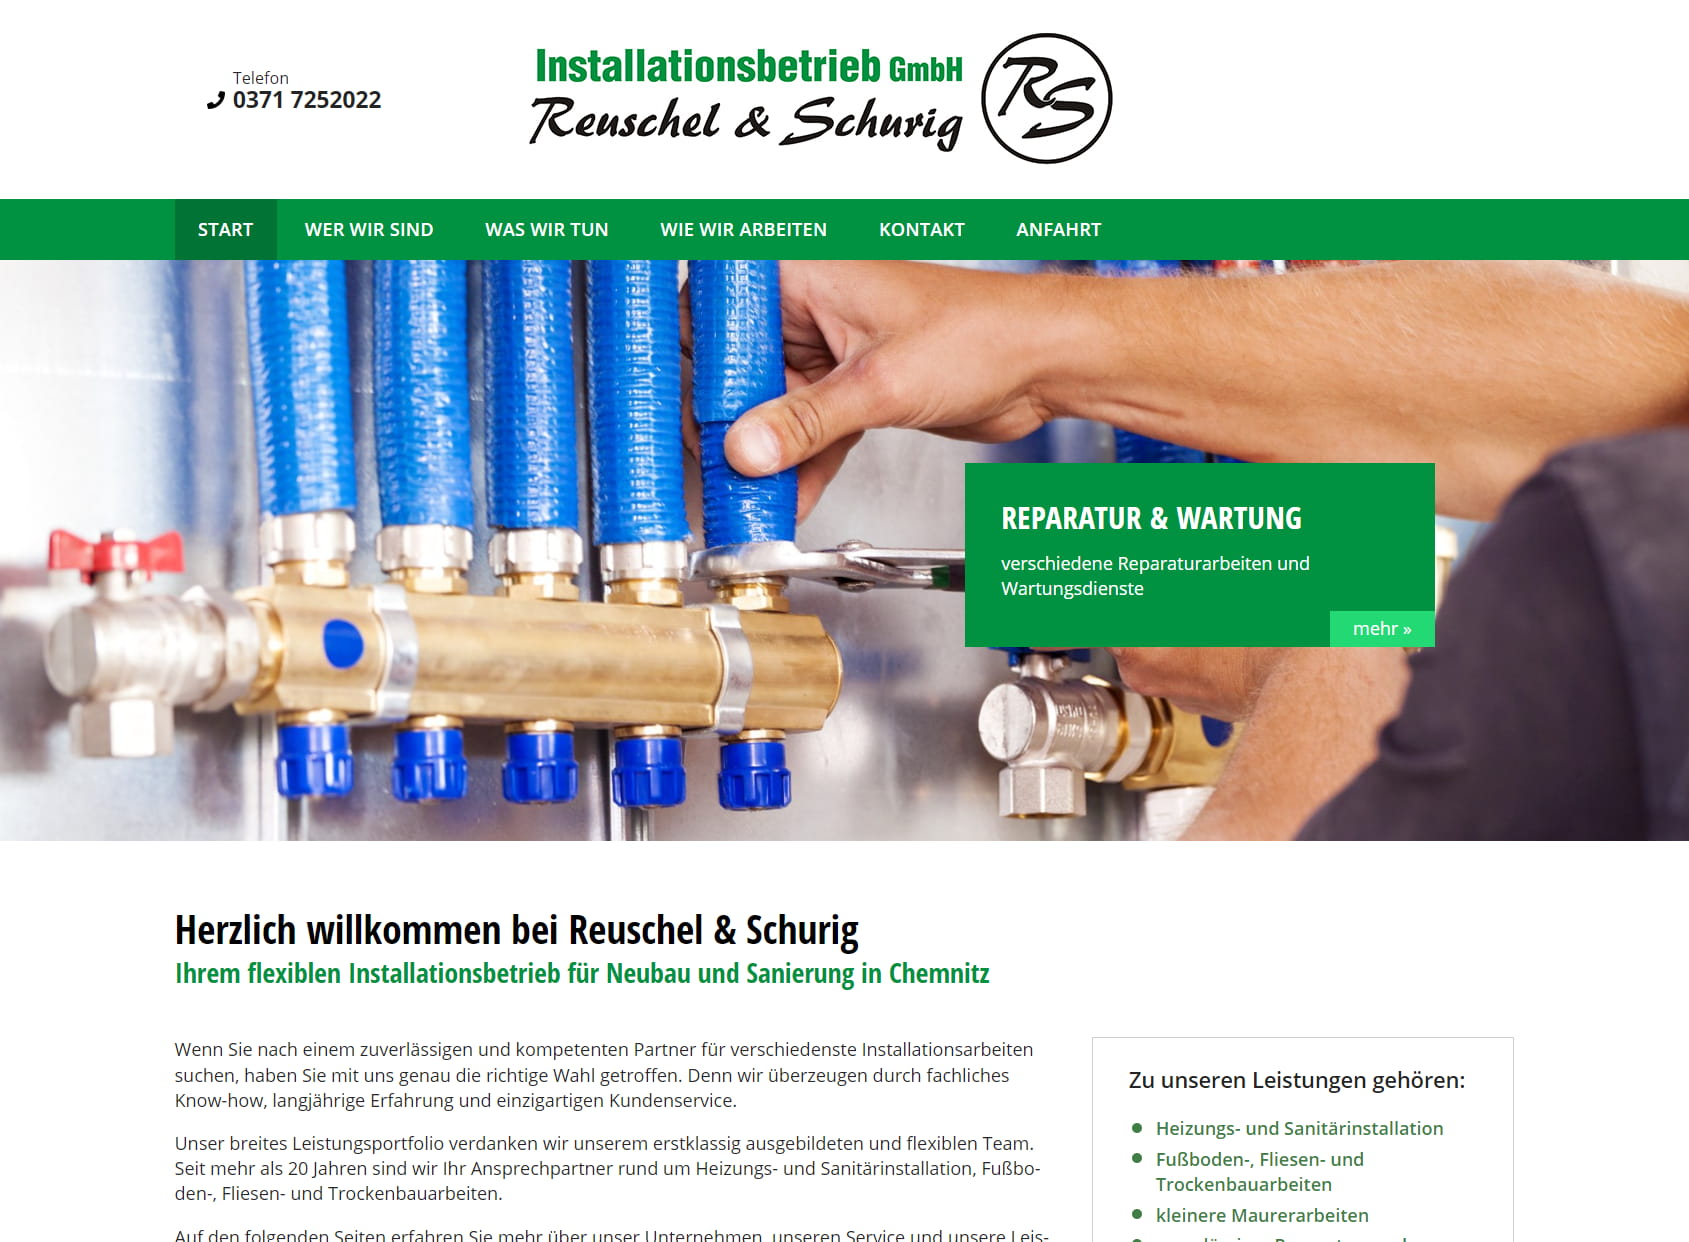 Reuschel & Schurig Installationsbetrieb GmbH